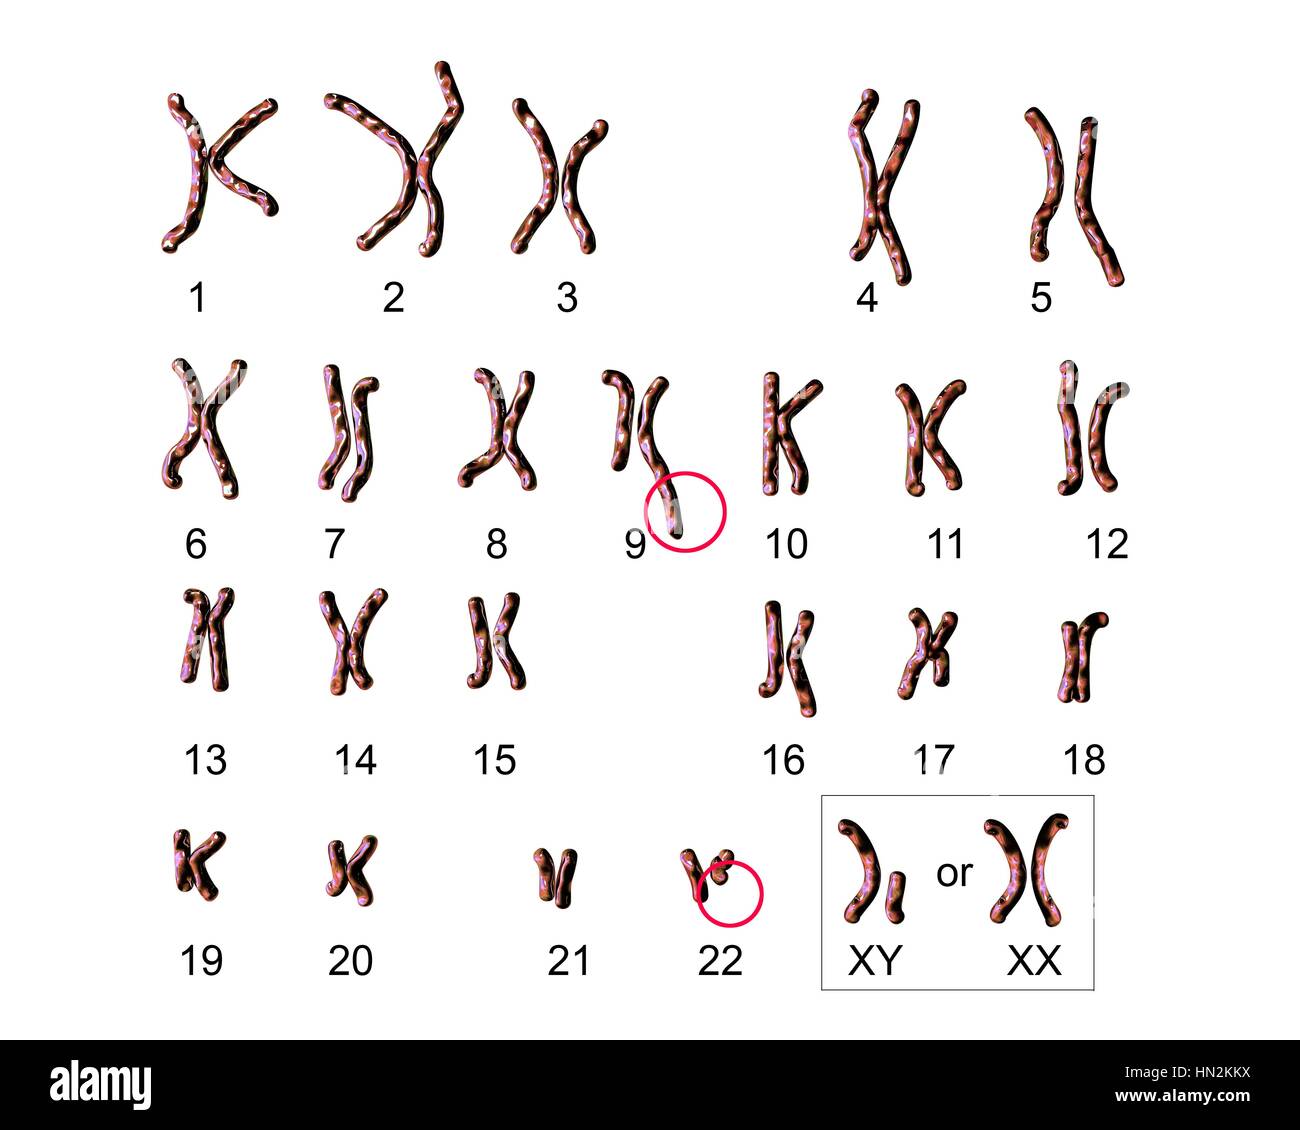 Philadelphia chromosome.Computer Darstellung der männlichen oder weiblichen Chromosomen (Chromosomensatz) einen defekten Chromosom jedes von Paaren 9 (Zentrum) 22 (unten Mitte). Die Defekte verursachen auf rechten Chromosomen von zwei Paaren, chronische myeloische Leukämie (CML). Die 46 Chromosomen des Menschen Karyotyp Stockfoto